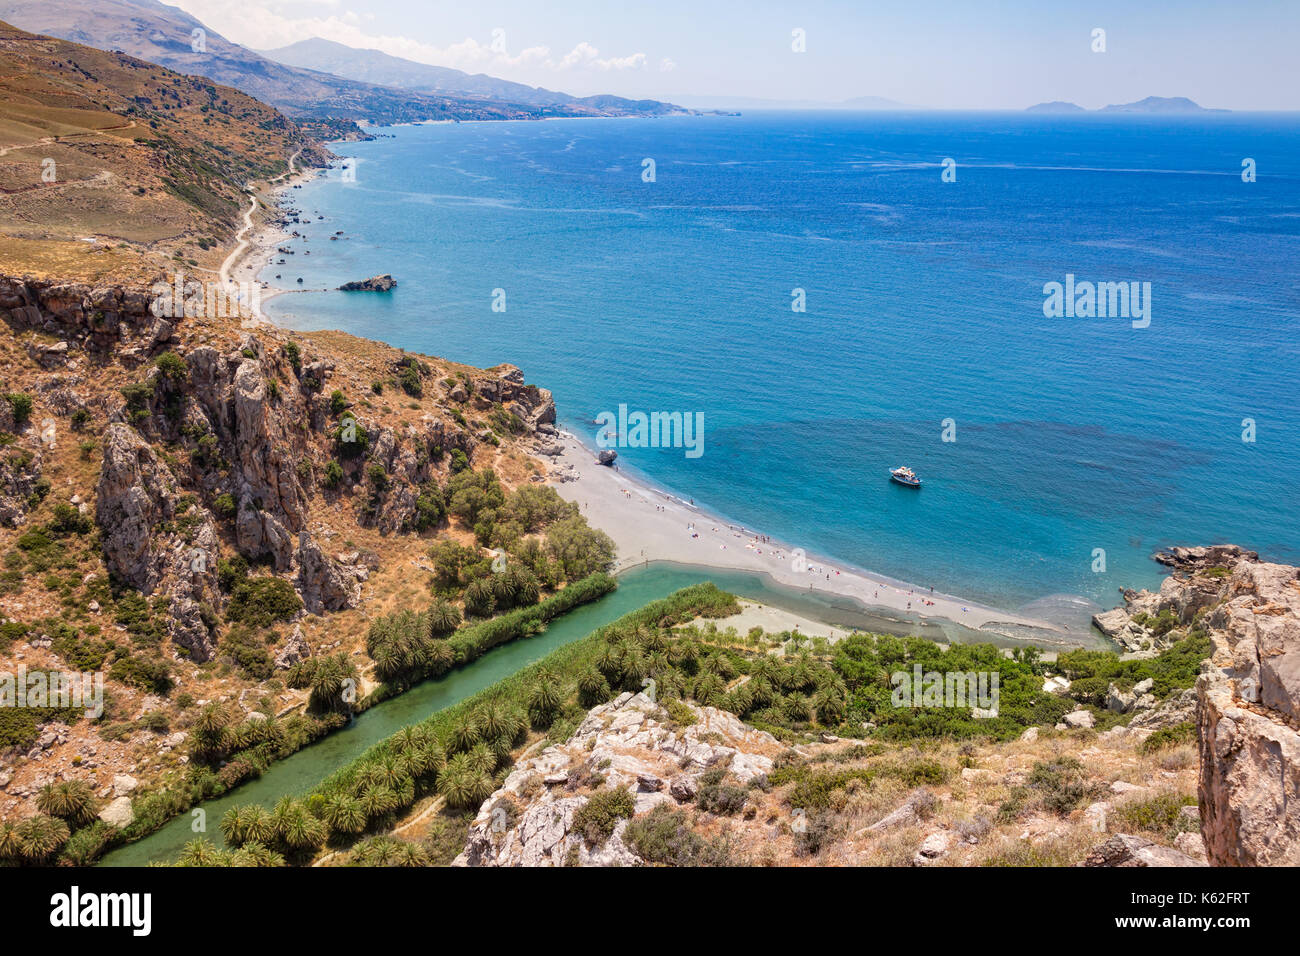 Vue aérienne de la plage de preveli et lagon près de rethymno en Crète, Grèce, méditerranée Banque D'Images